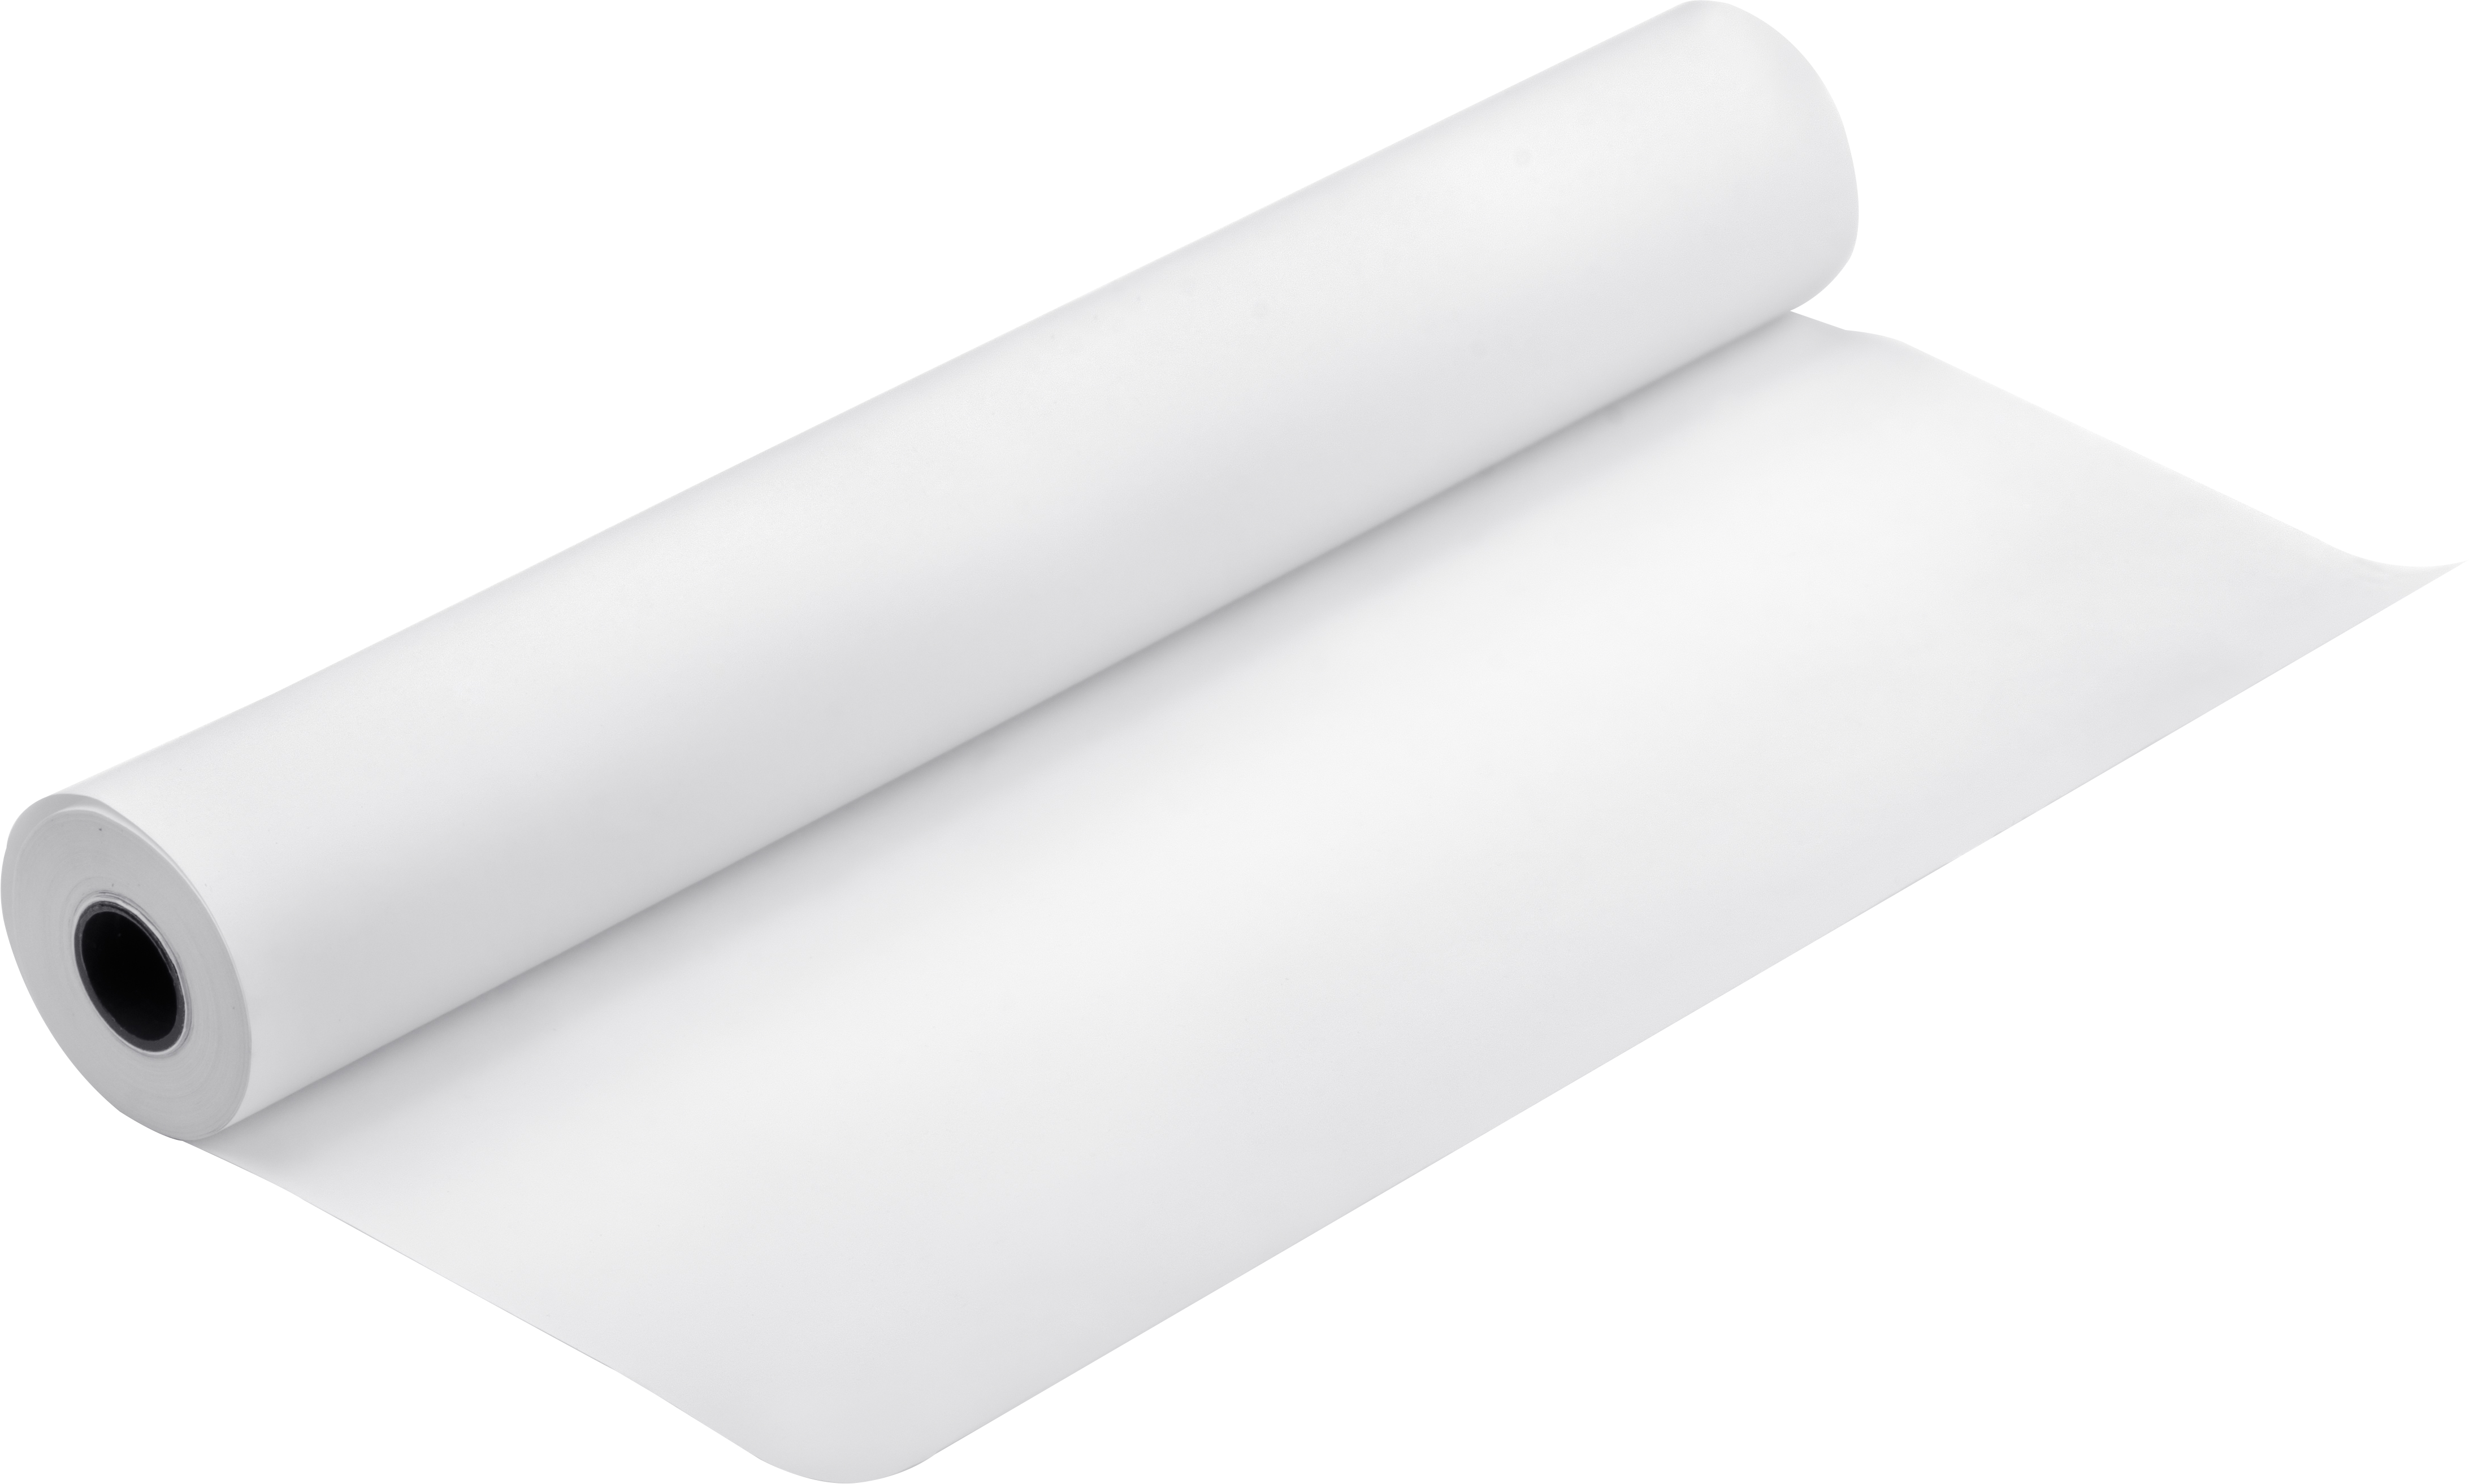 Papier couché mat adhésif jet d'encre 130g/m2 - A4 (25 feuilles)